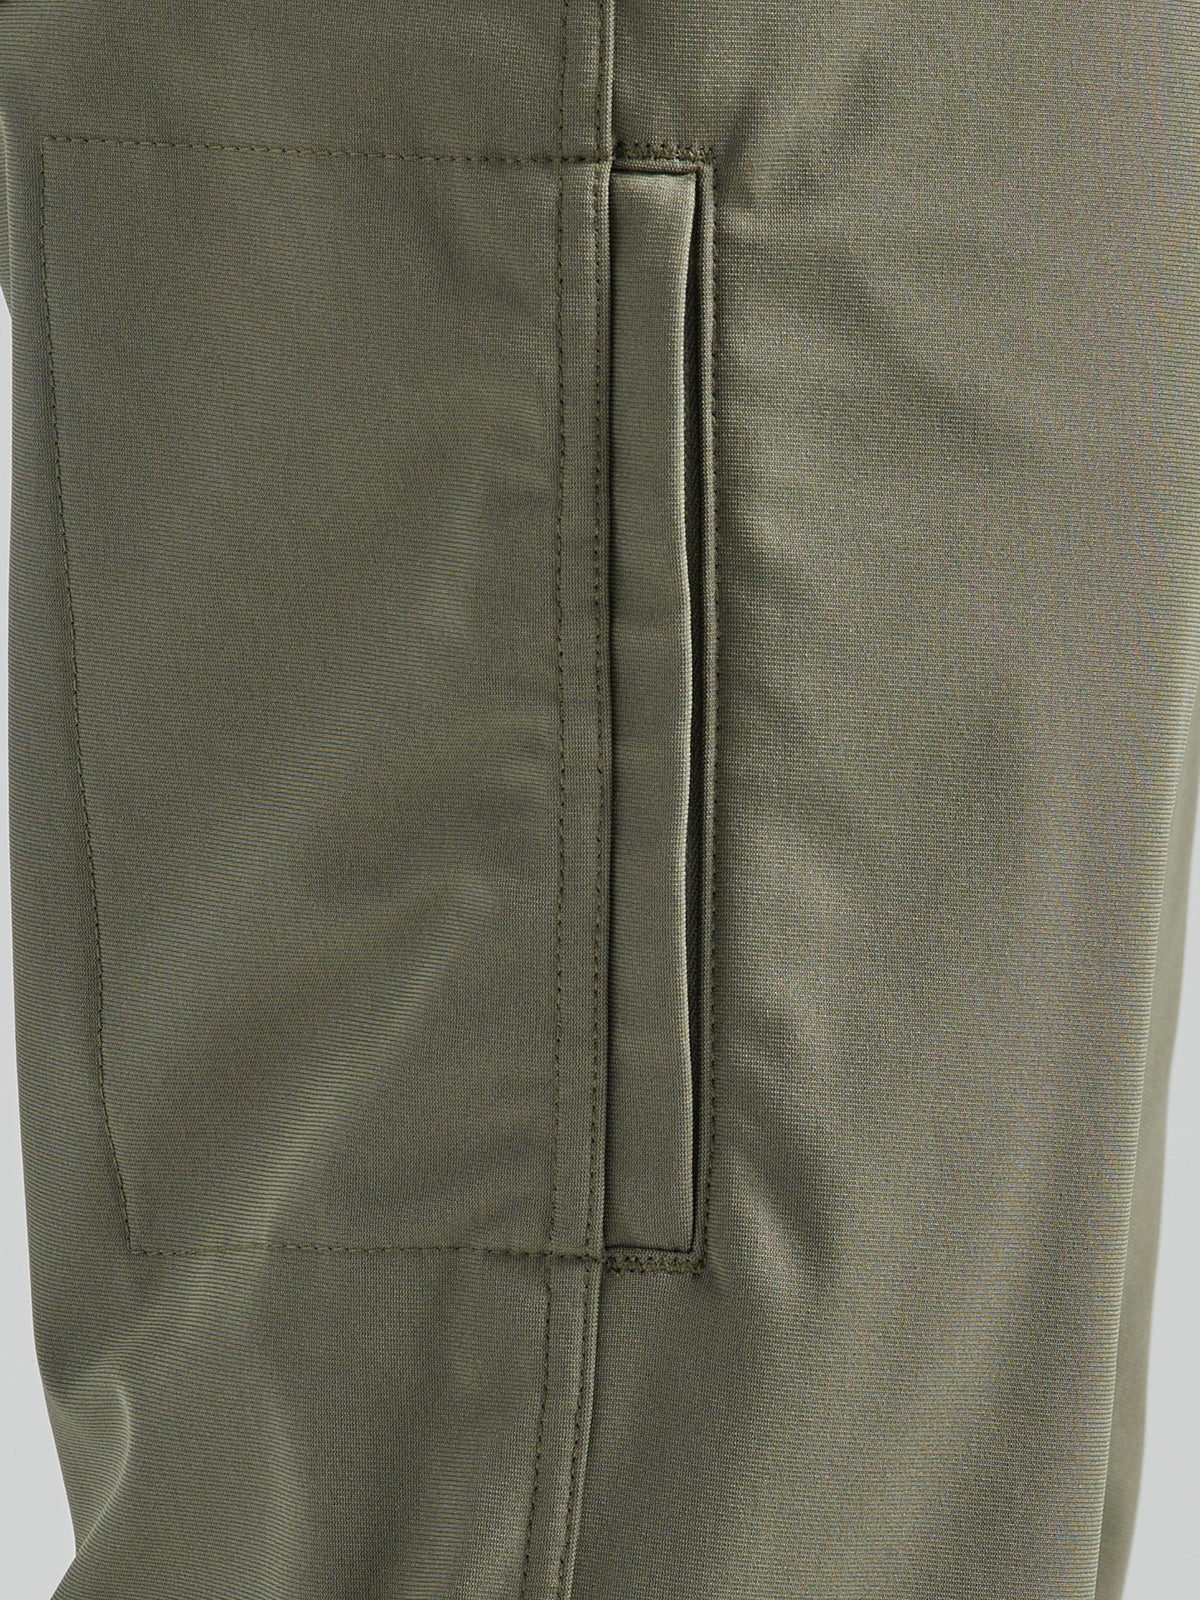 All Terrain Gear FWDS 5 Pocket Pants in Dusty Olive